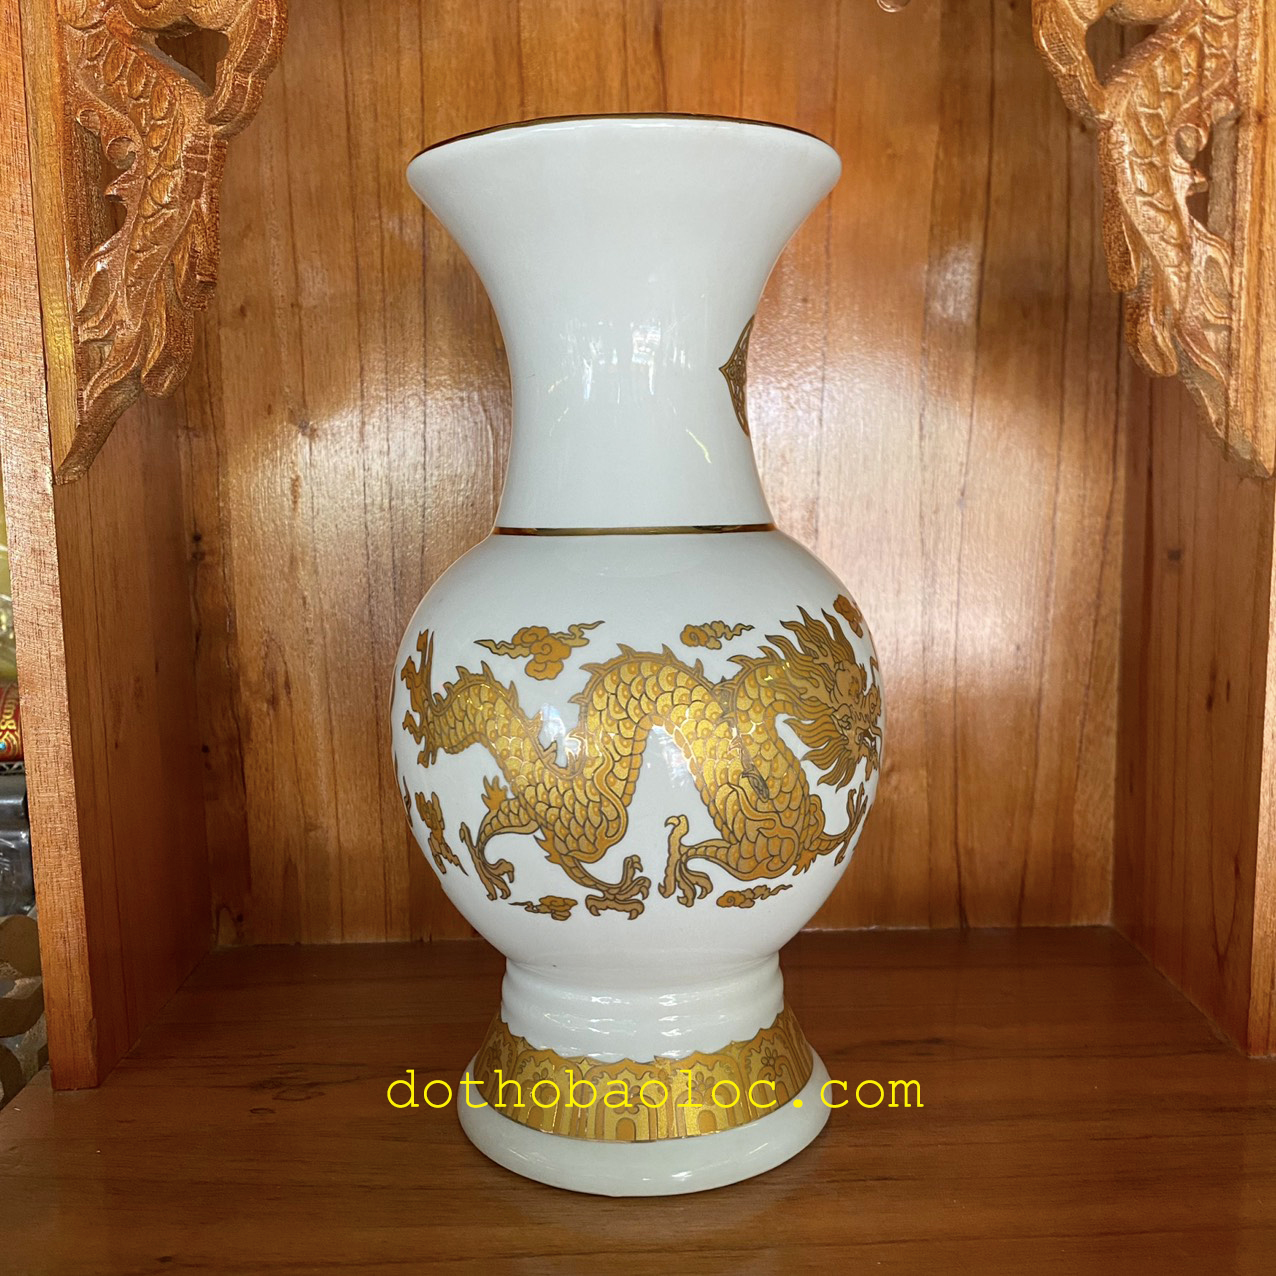 Bình bông sứ trắng hình rồng vàng 3D cao cấp 3 cỡ: 20cm, 22.5cm, 24.5cm